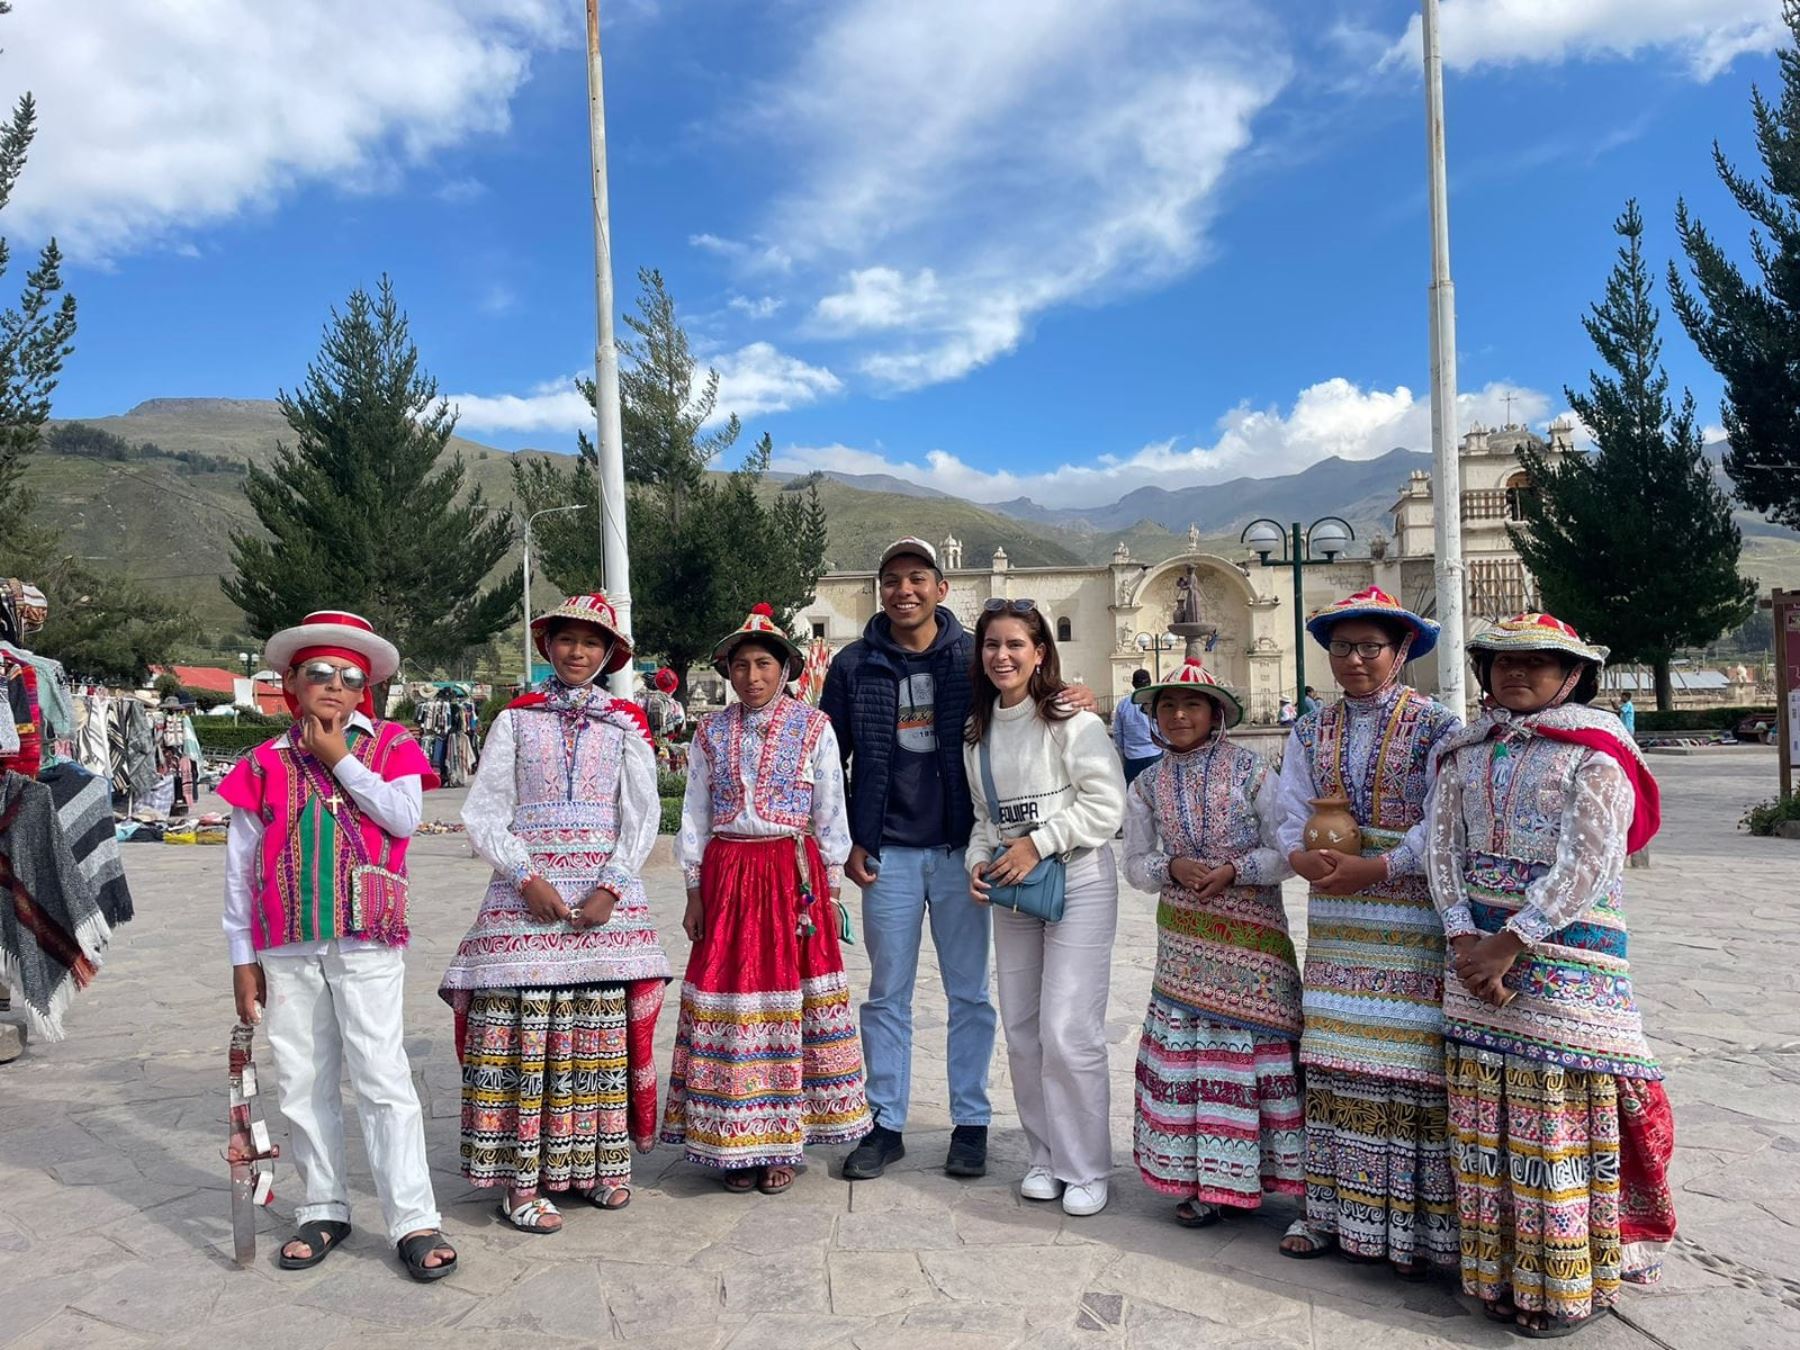 La región Arequipa estima recibir entre 25,000 y 30,000 turistas este feriado largo por el Día del Trabajador, informó Jorge Meza Cruz, gerente regional de Comercio Exterior y Turismo. Foto: ANDINA/difusión.